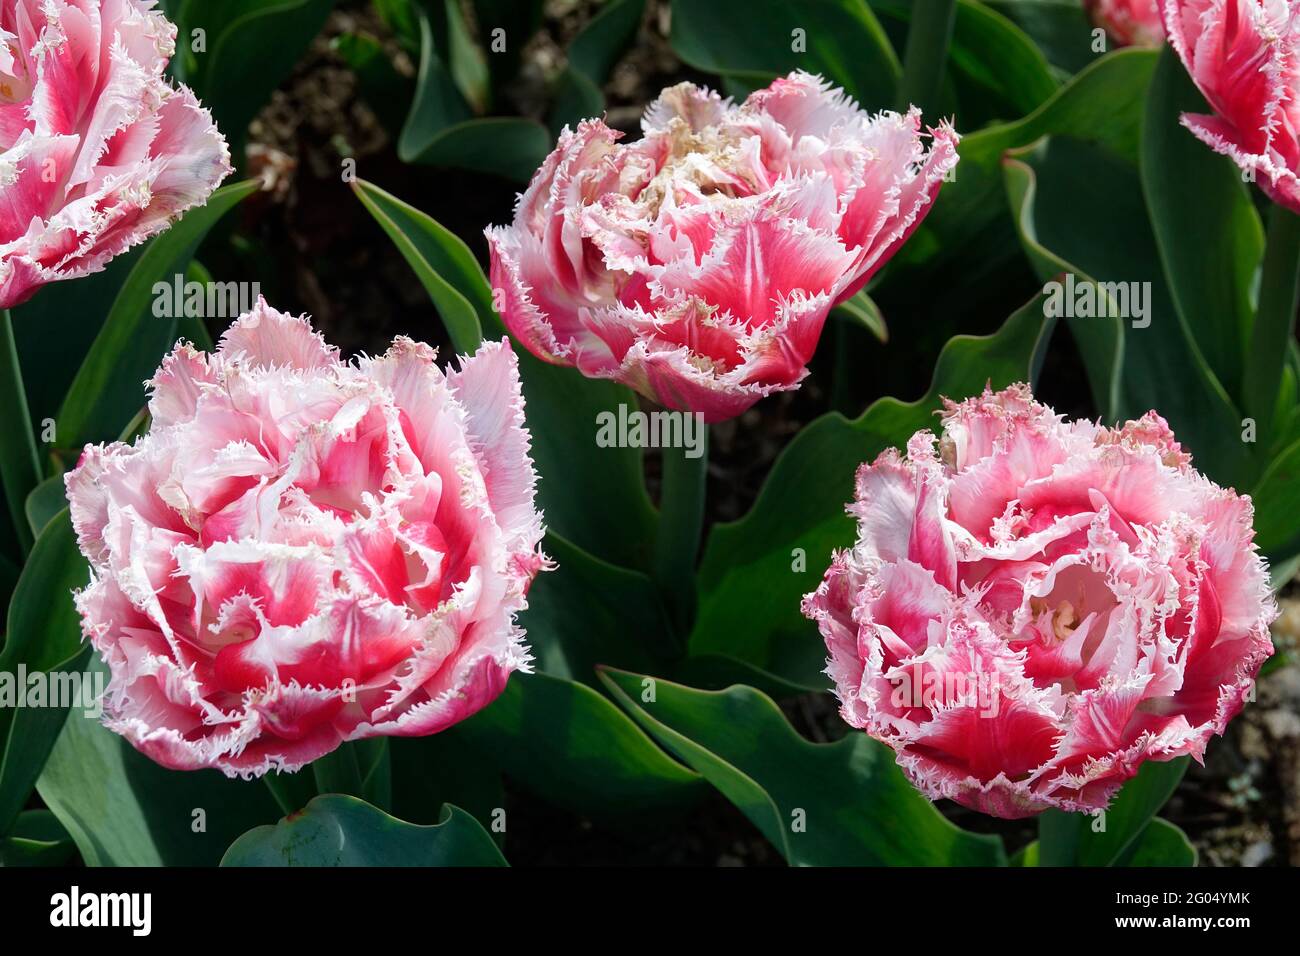 Tulipani rosa del Queenland con i tartufi sui petali doppi dei bordi dentati e delle punte bianche Foto Stock